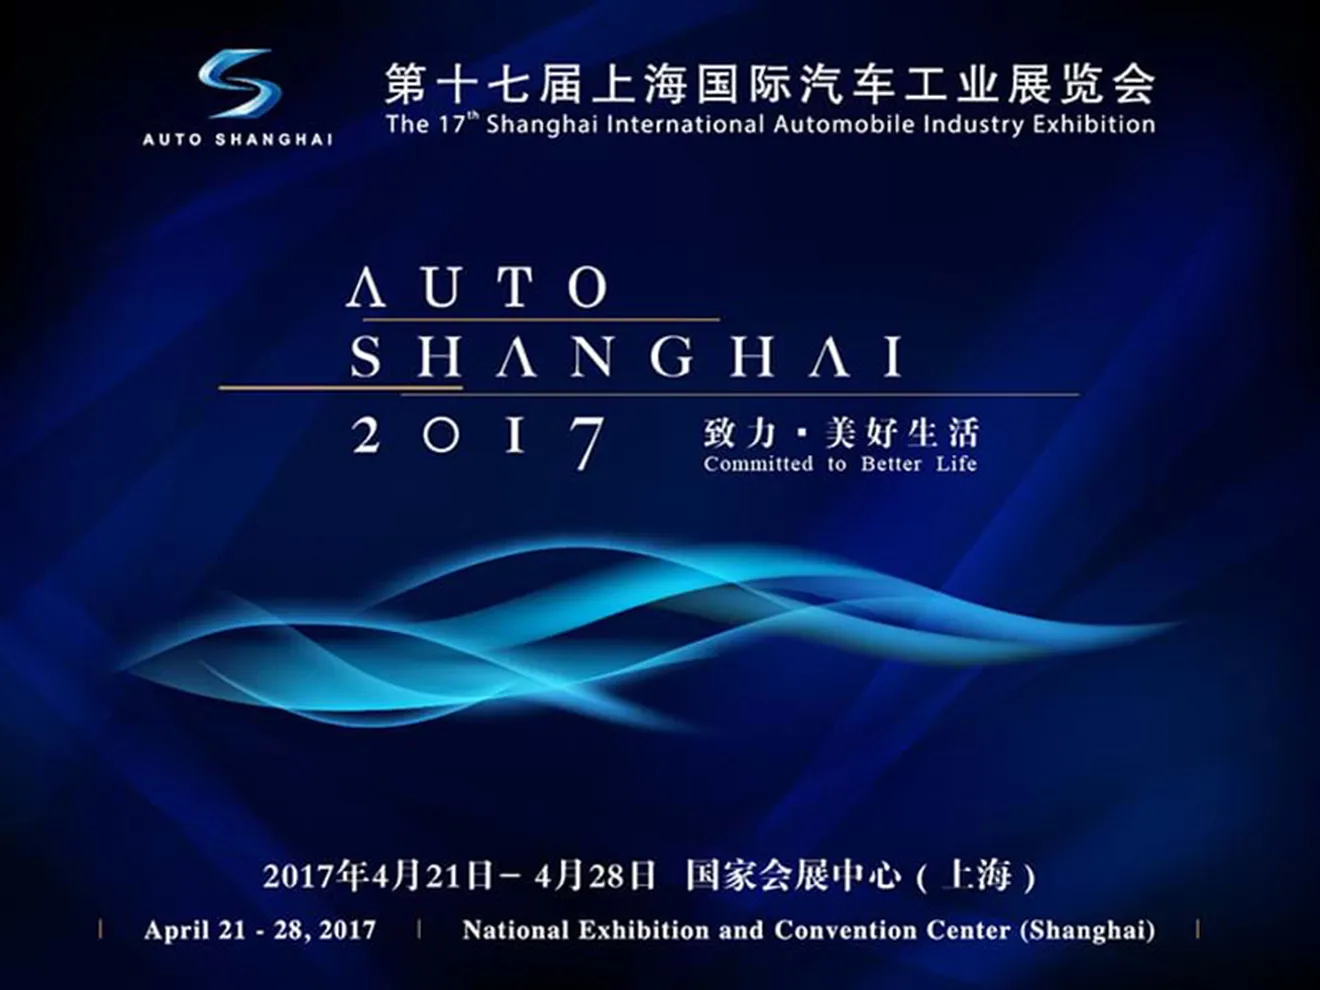 Salón de Shanghái 2017: las novedades más importantes que conoceremos